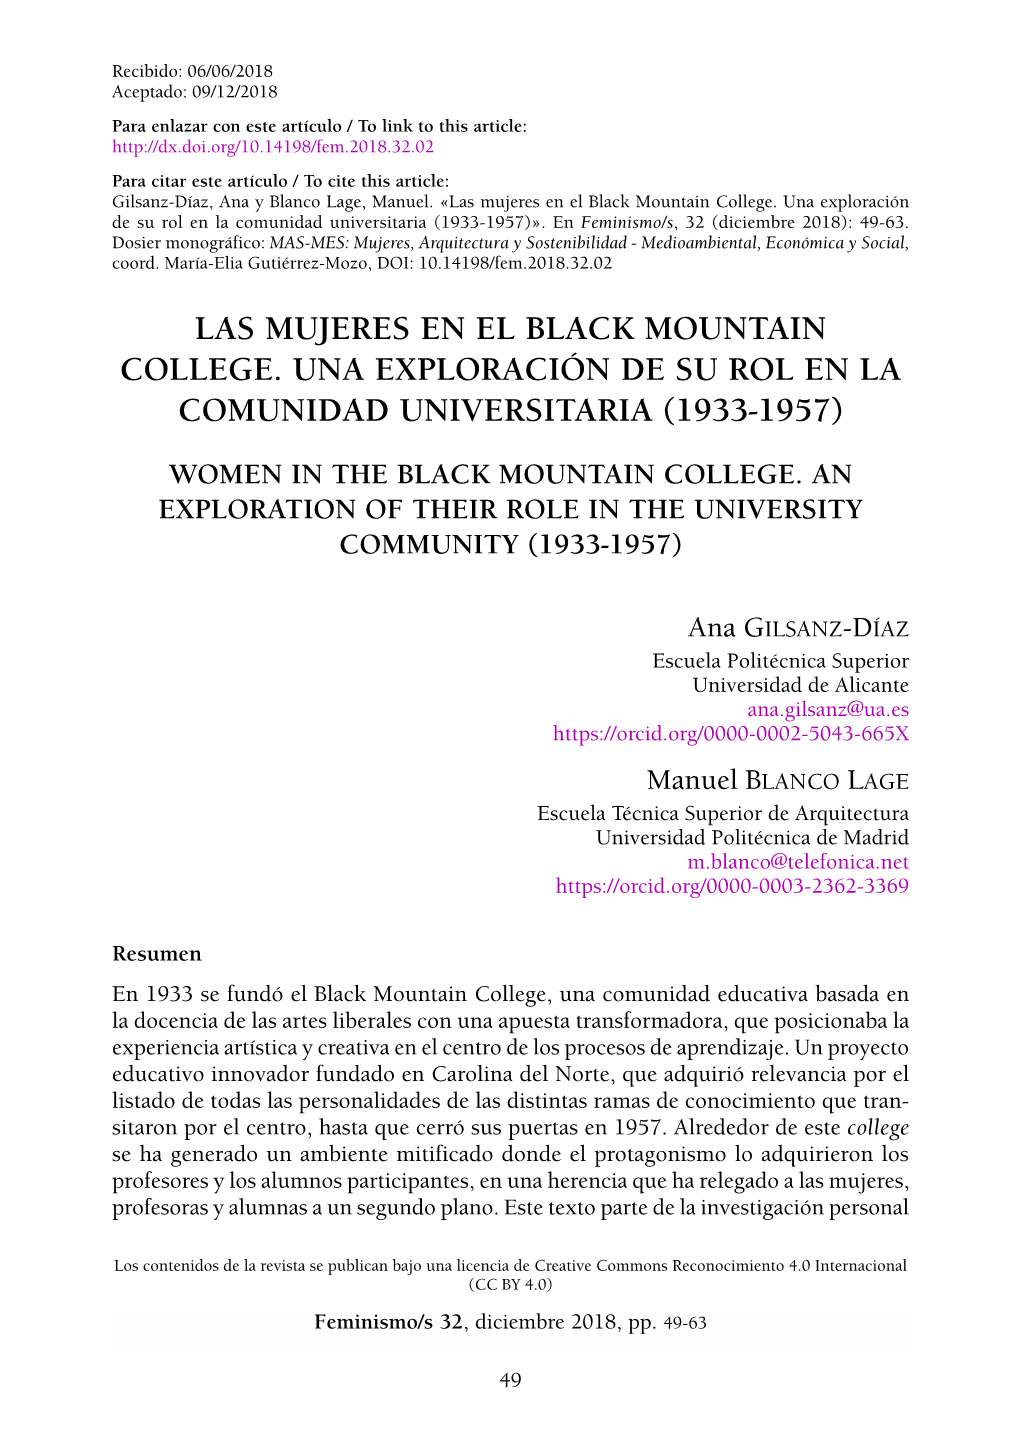 Las Mujeres En El Black Mountain College. Una Exploración De Su Rol En La Comunidad Universitaria (1933-1957)»